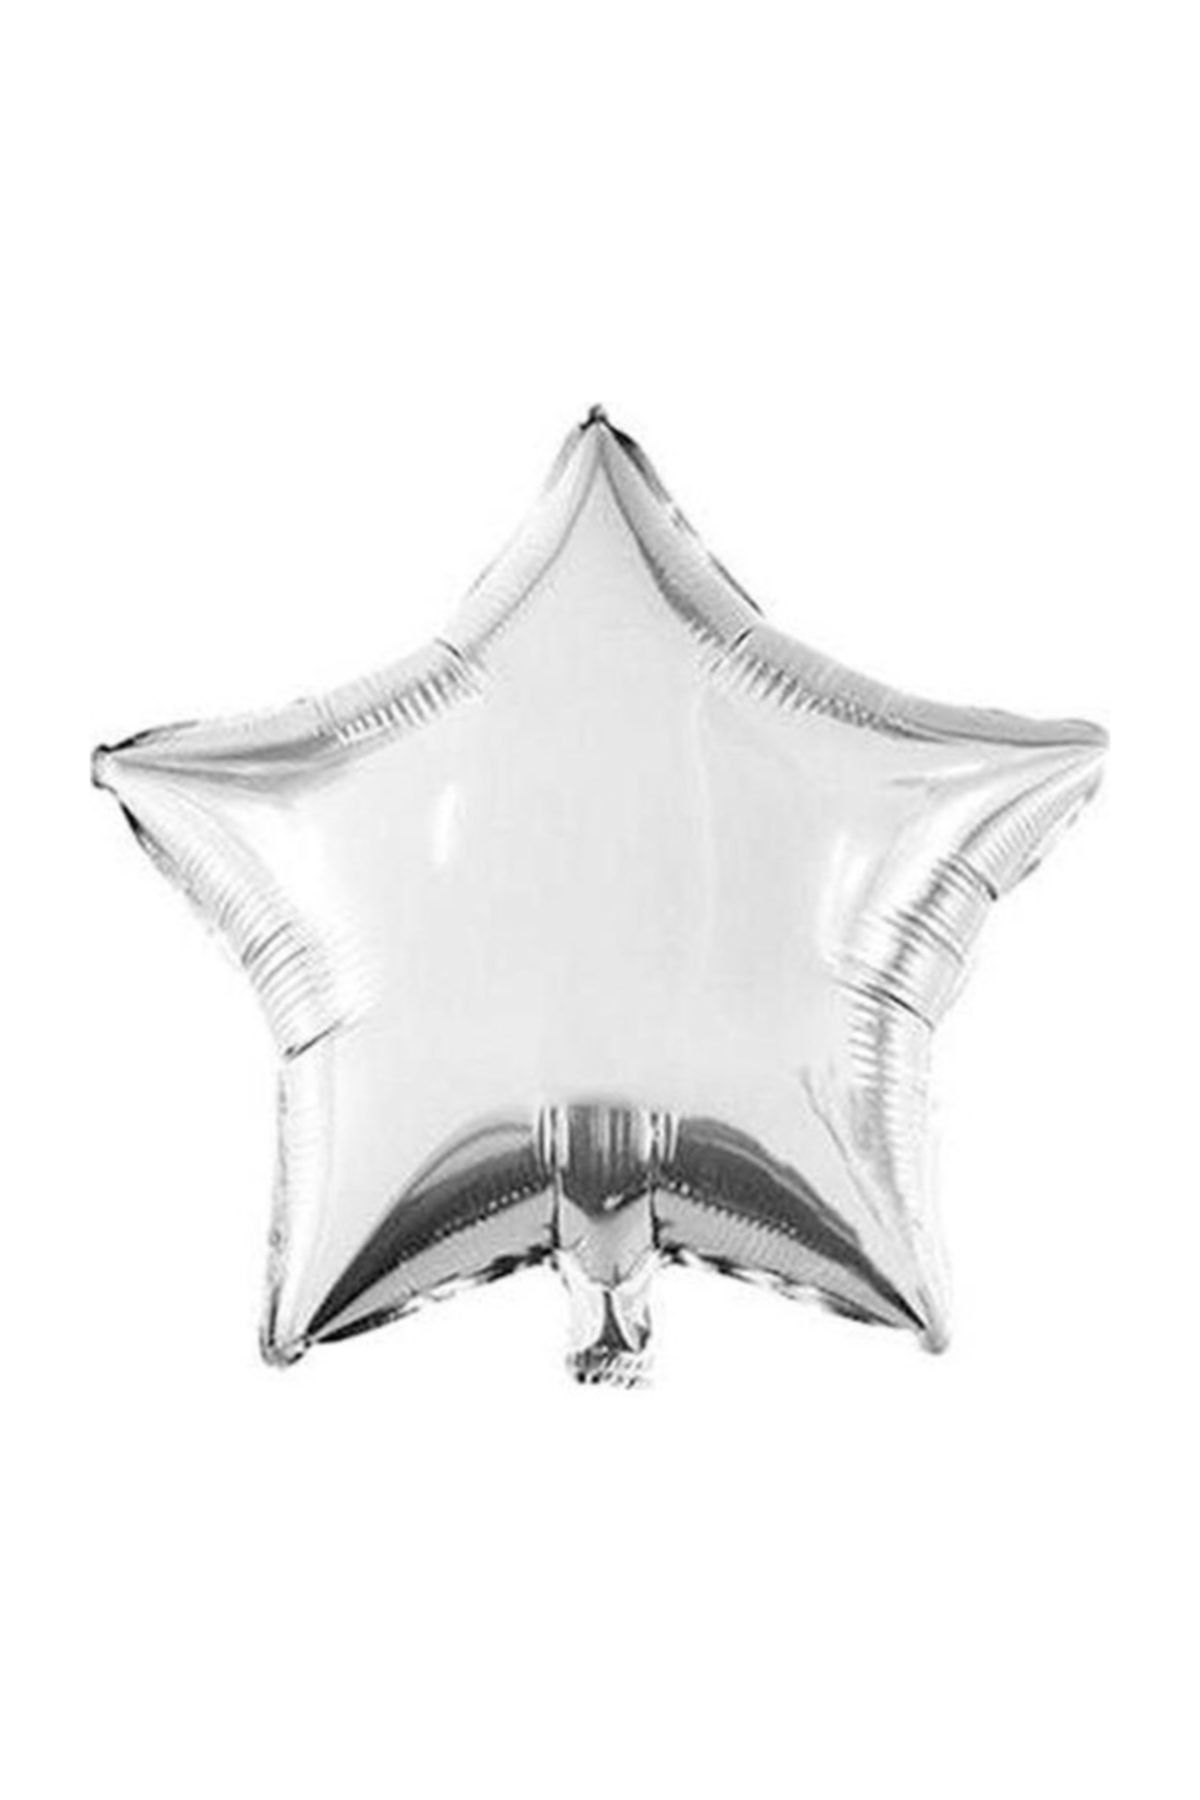 Cansüs Gümüş Yıldız Folyo Balon 45cm